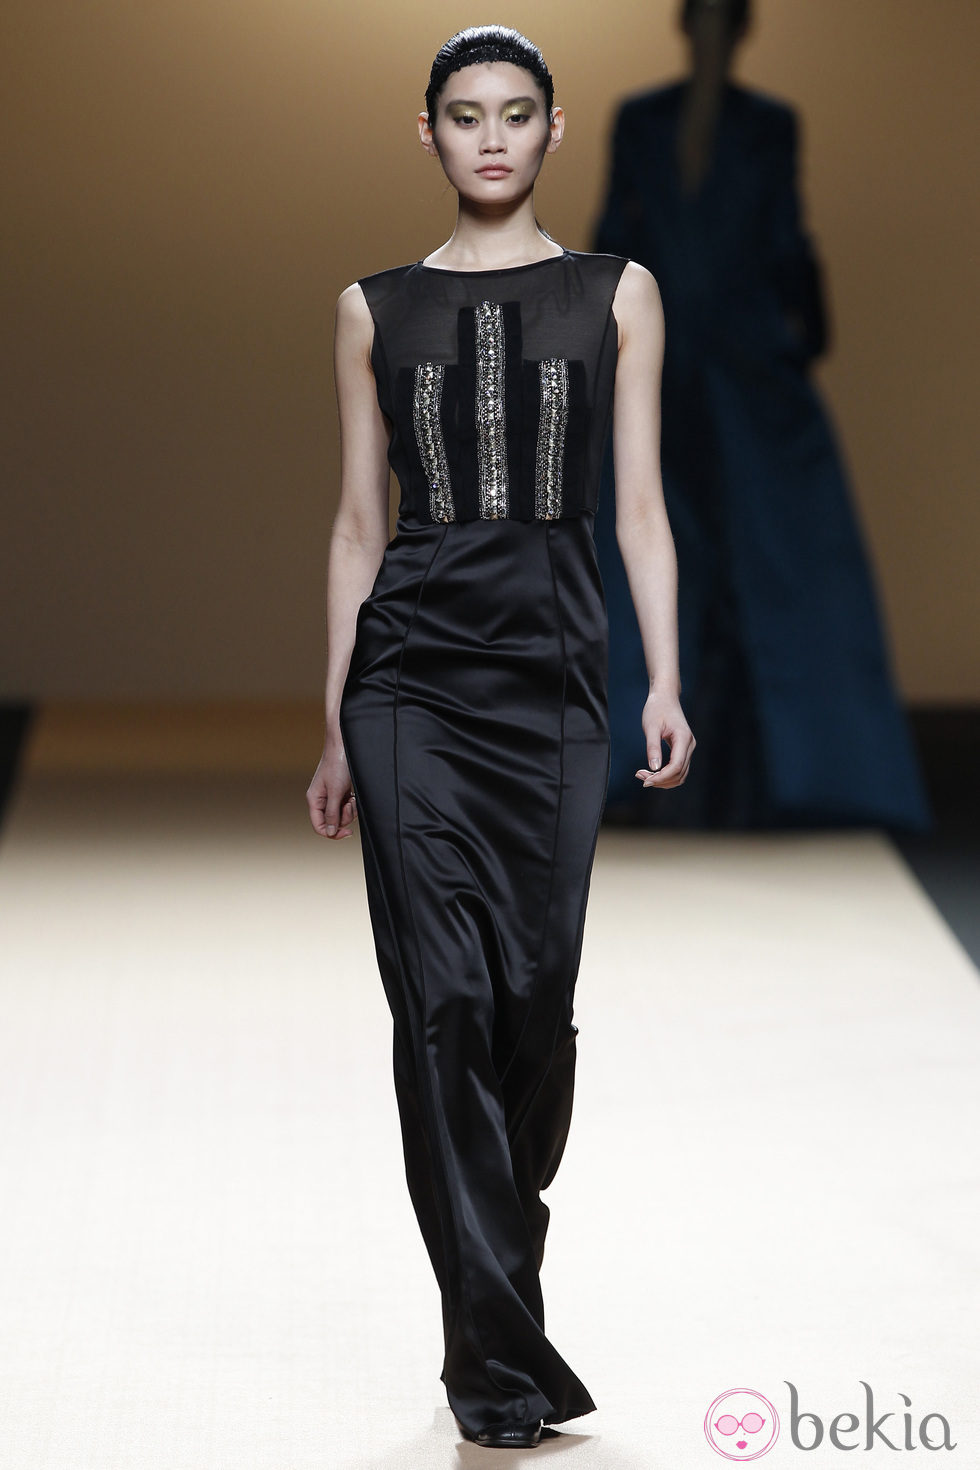 Desfile de Jesus del Pozo en la Fashion Week Madrid: vestido negro de gala con pedrería